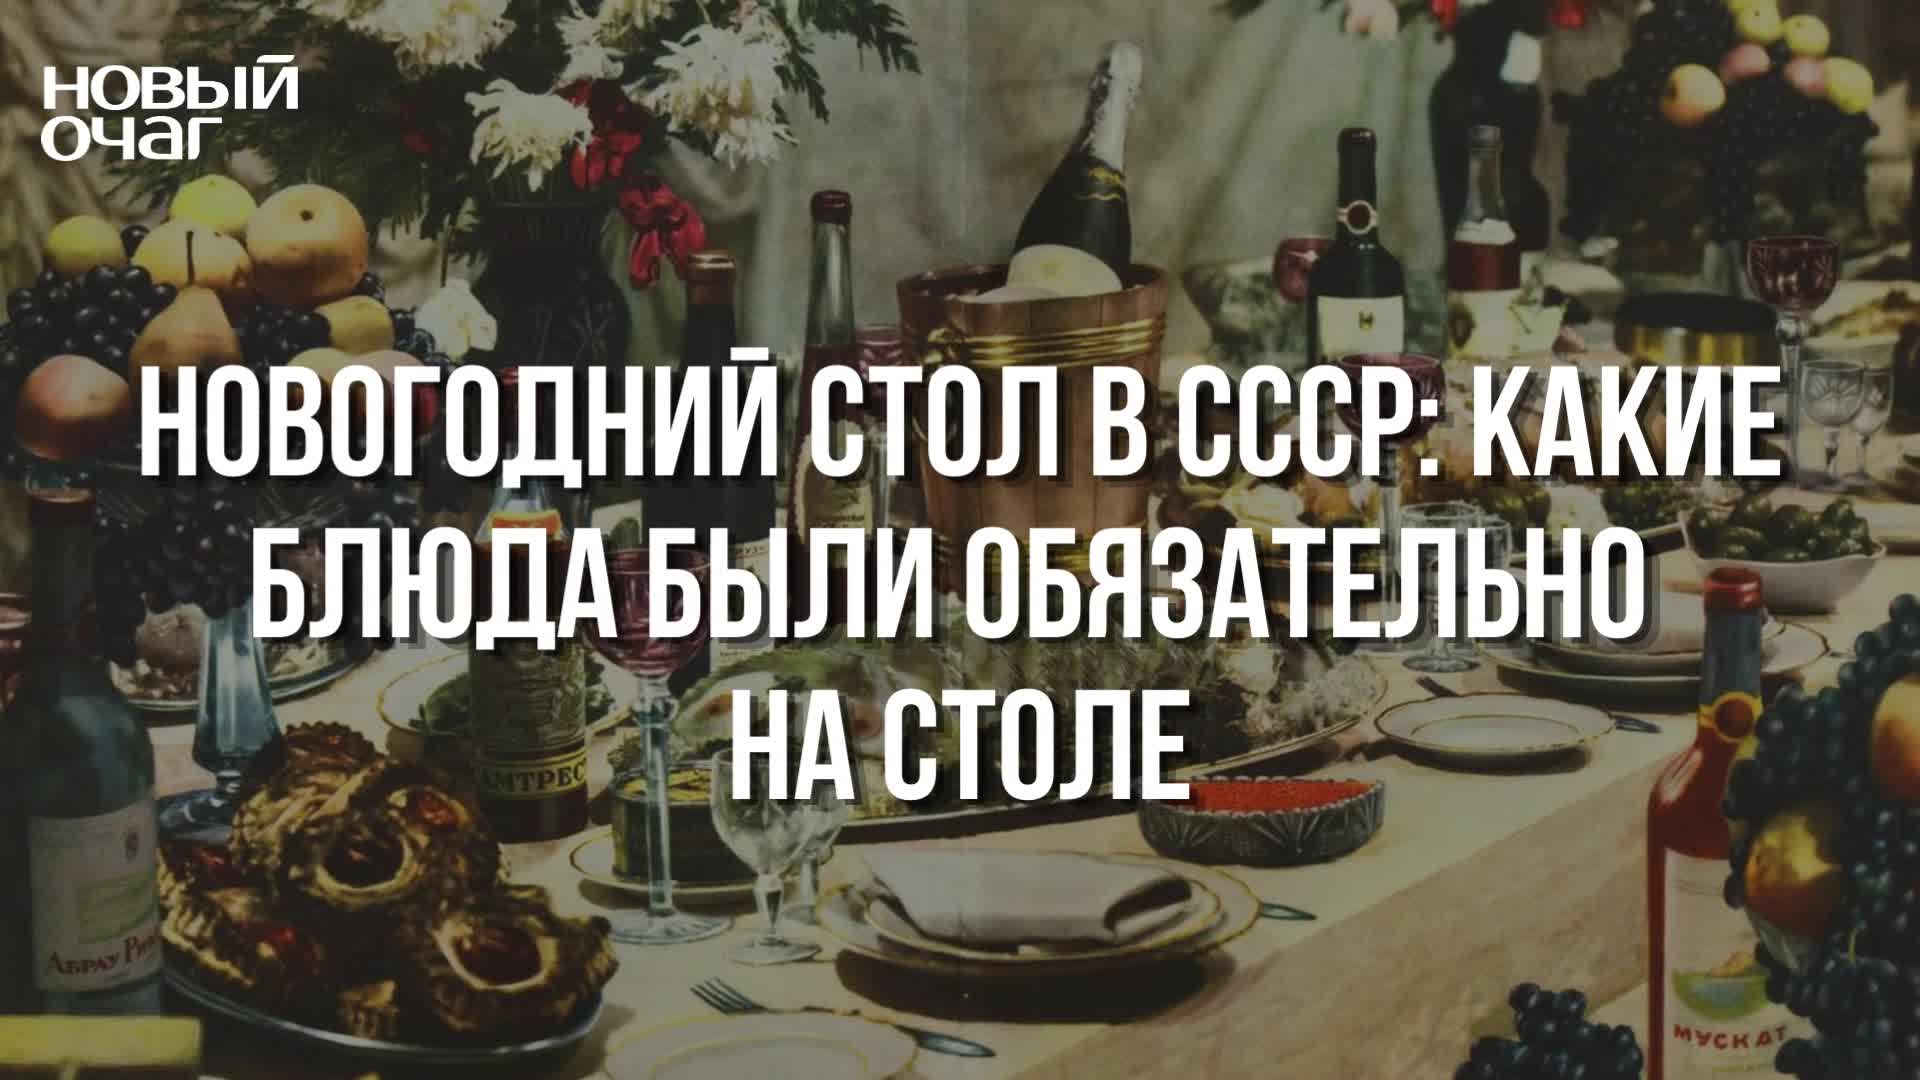 Новый год советский стол